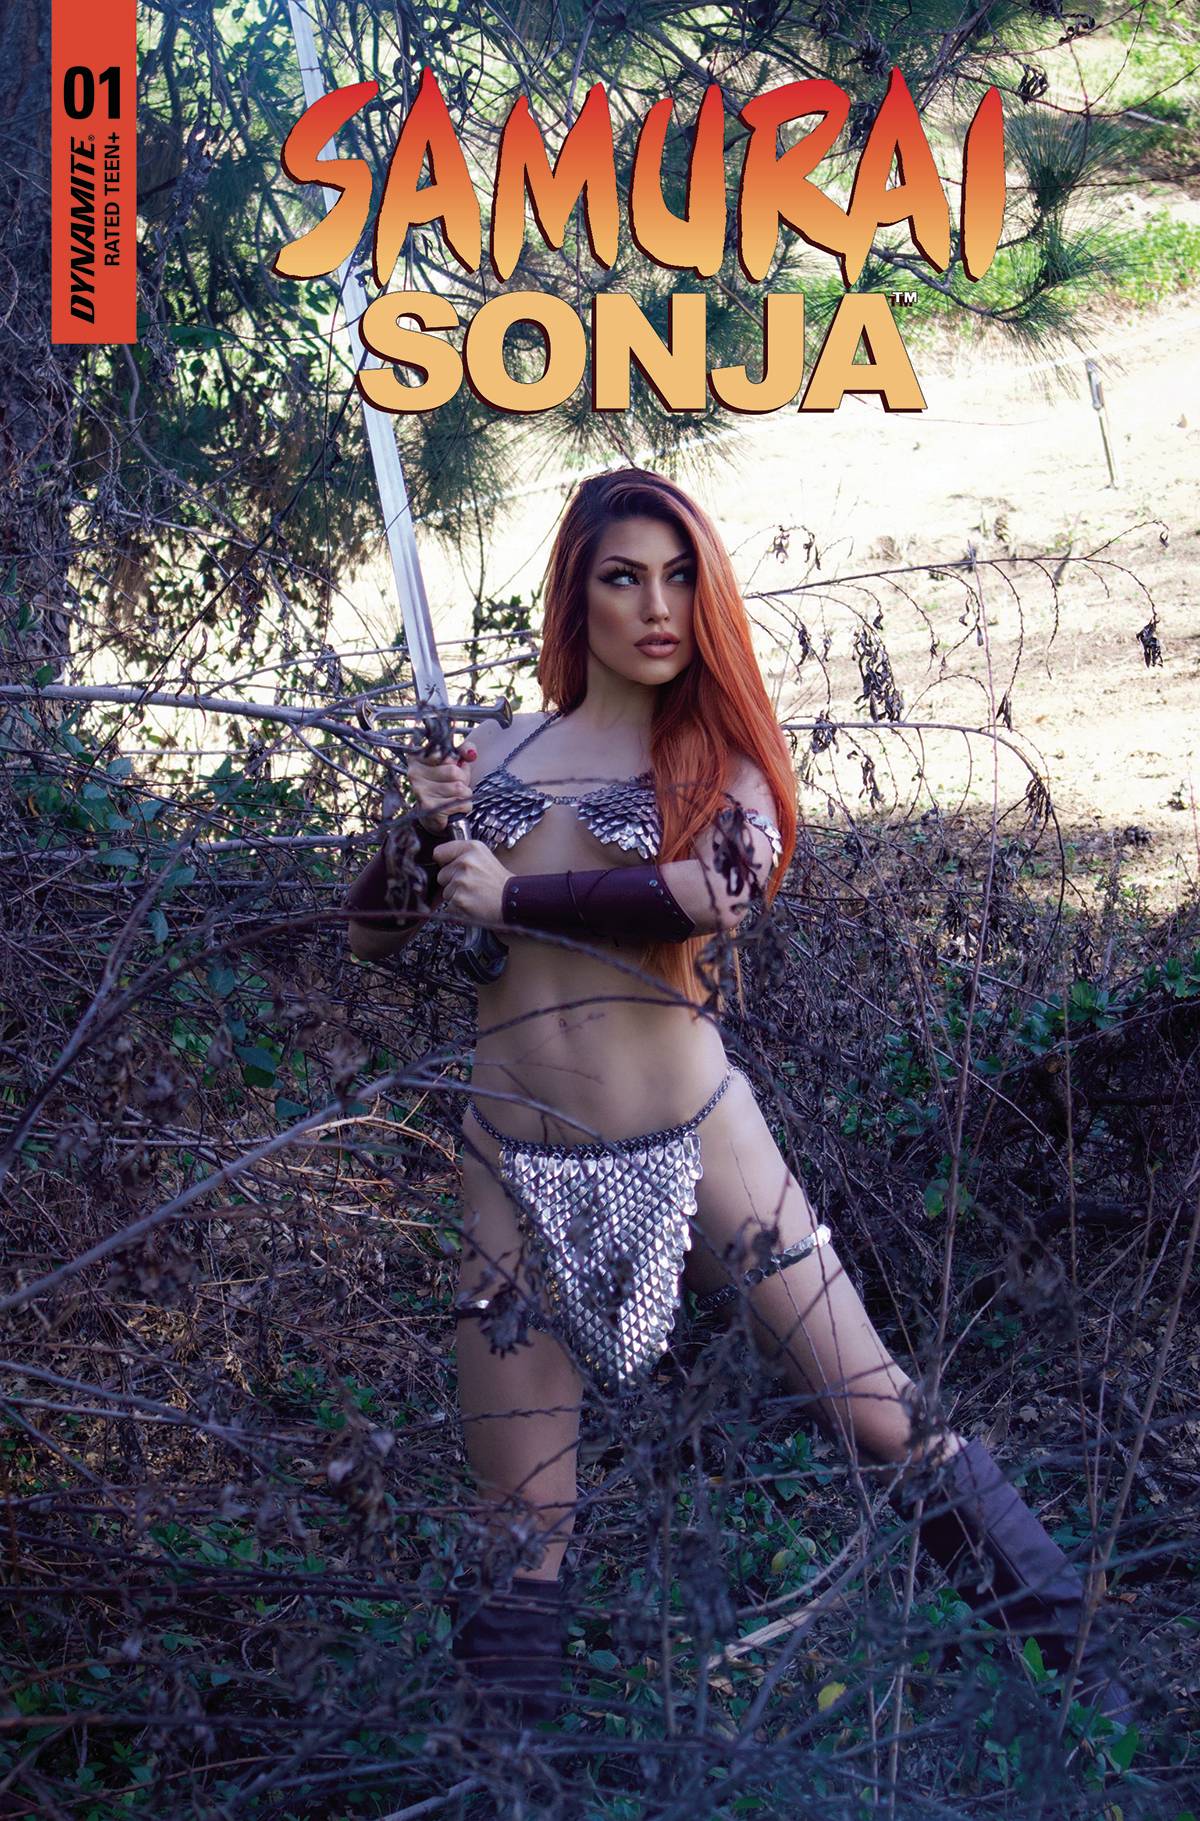 Samurai Sonja #1 Cover E Cosplay